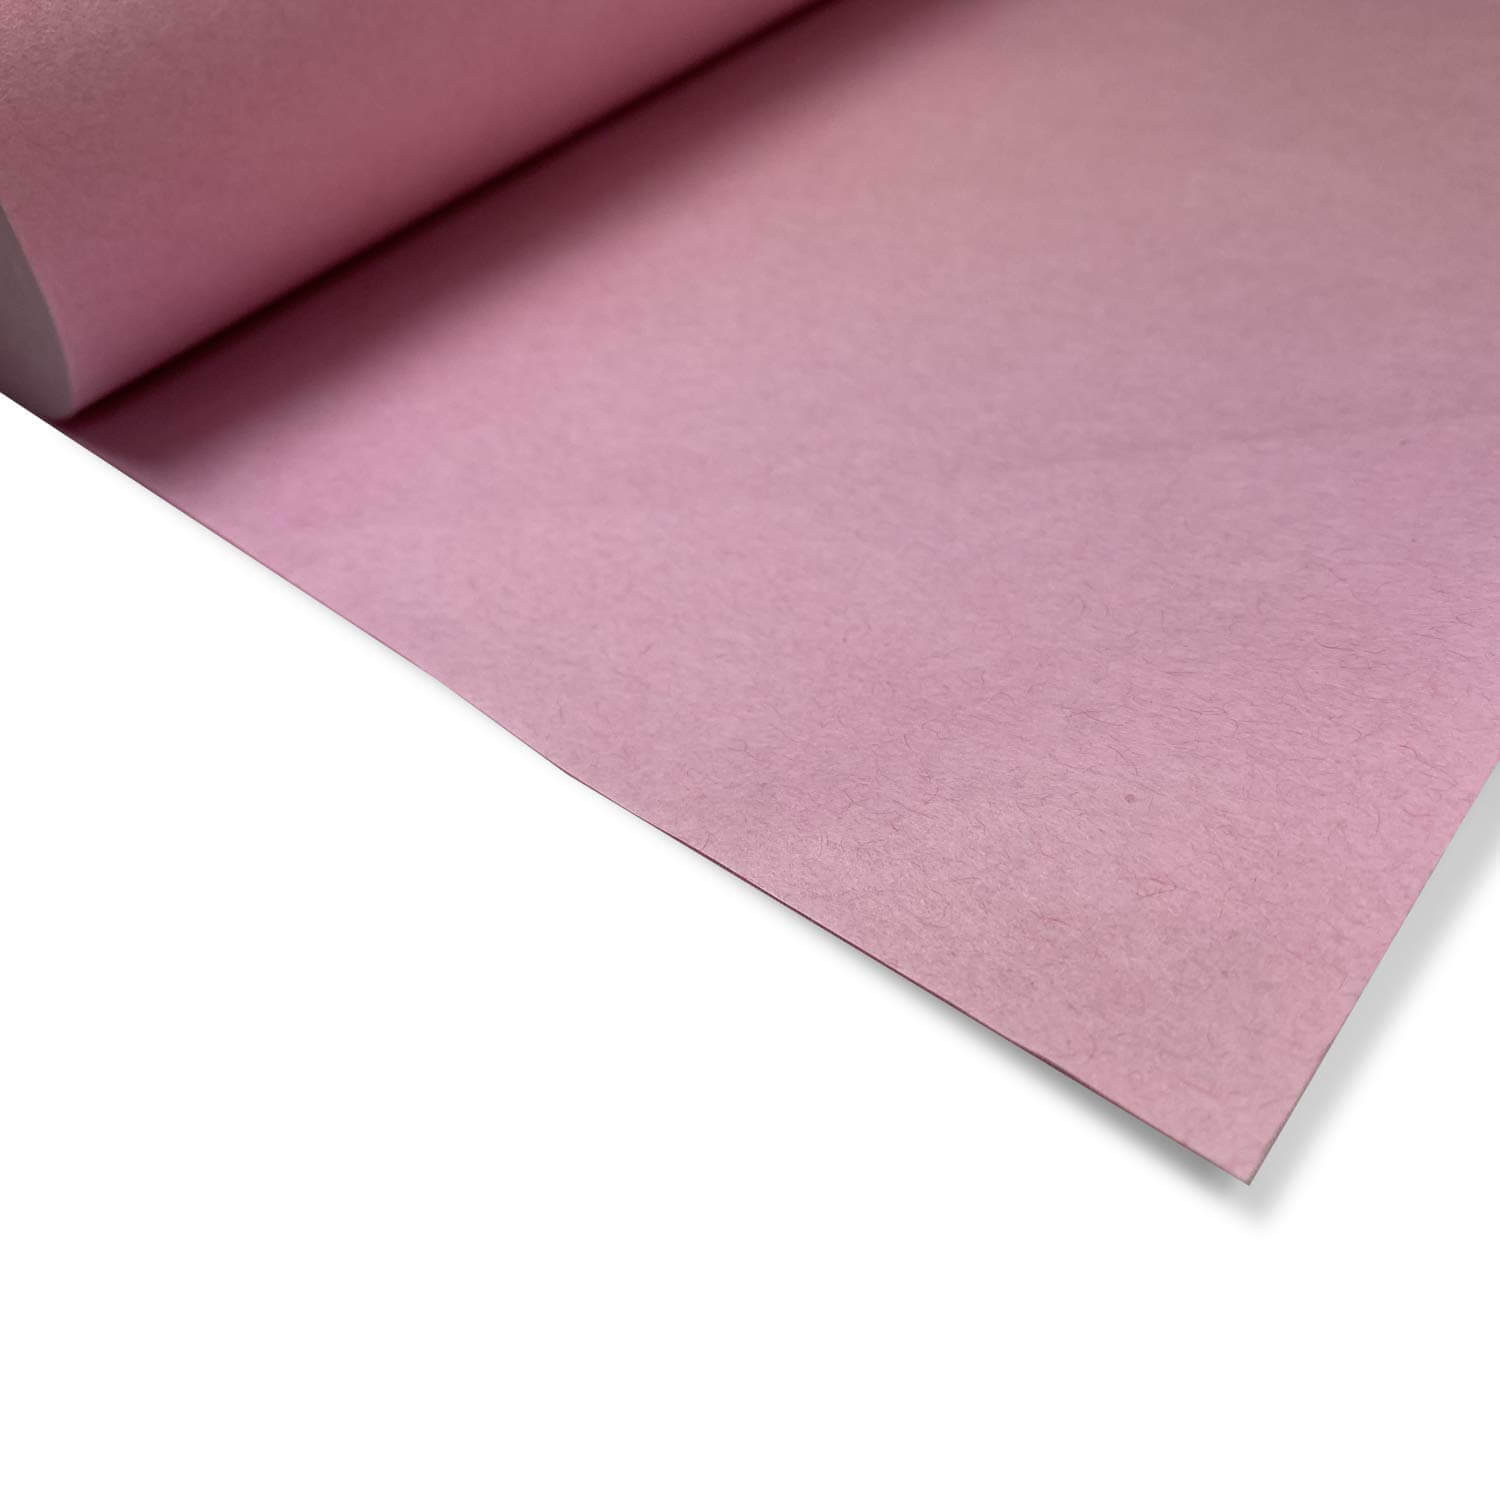 Pink / Peach Butcher Paper Roll - WebstaurantStore